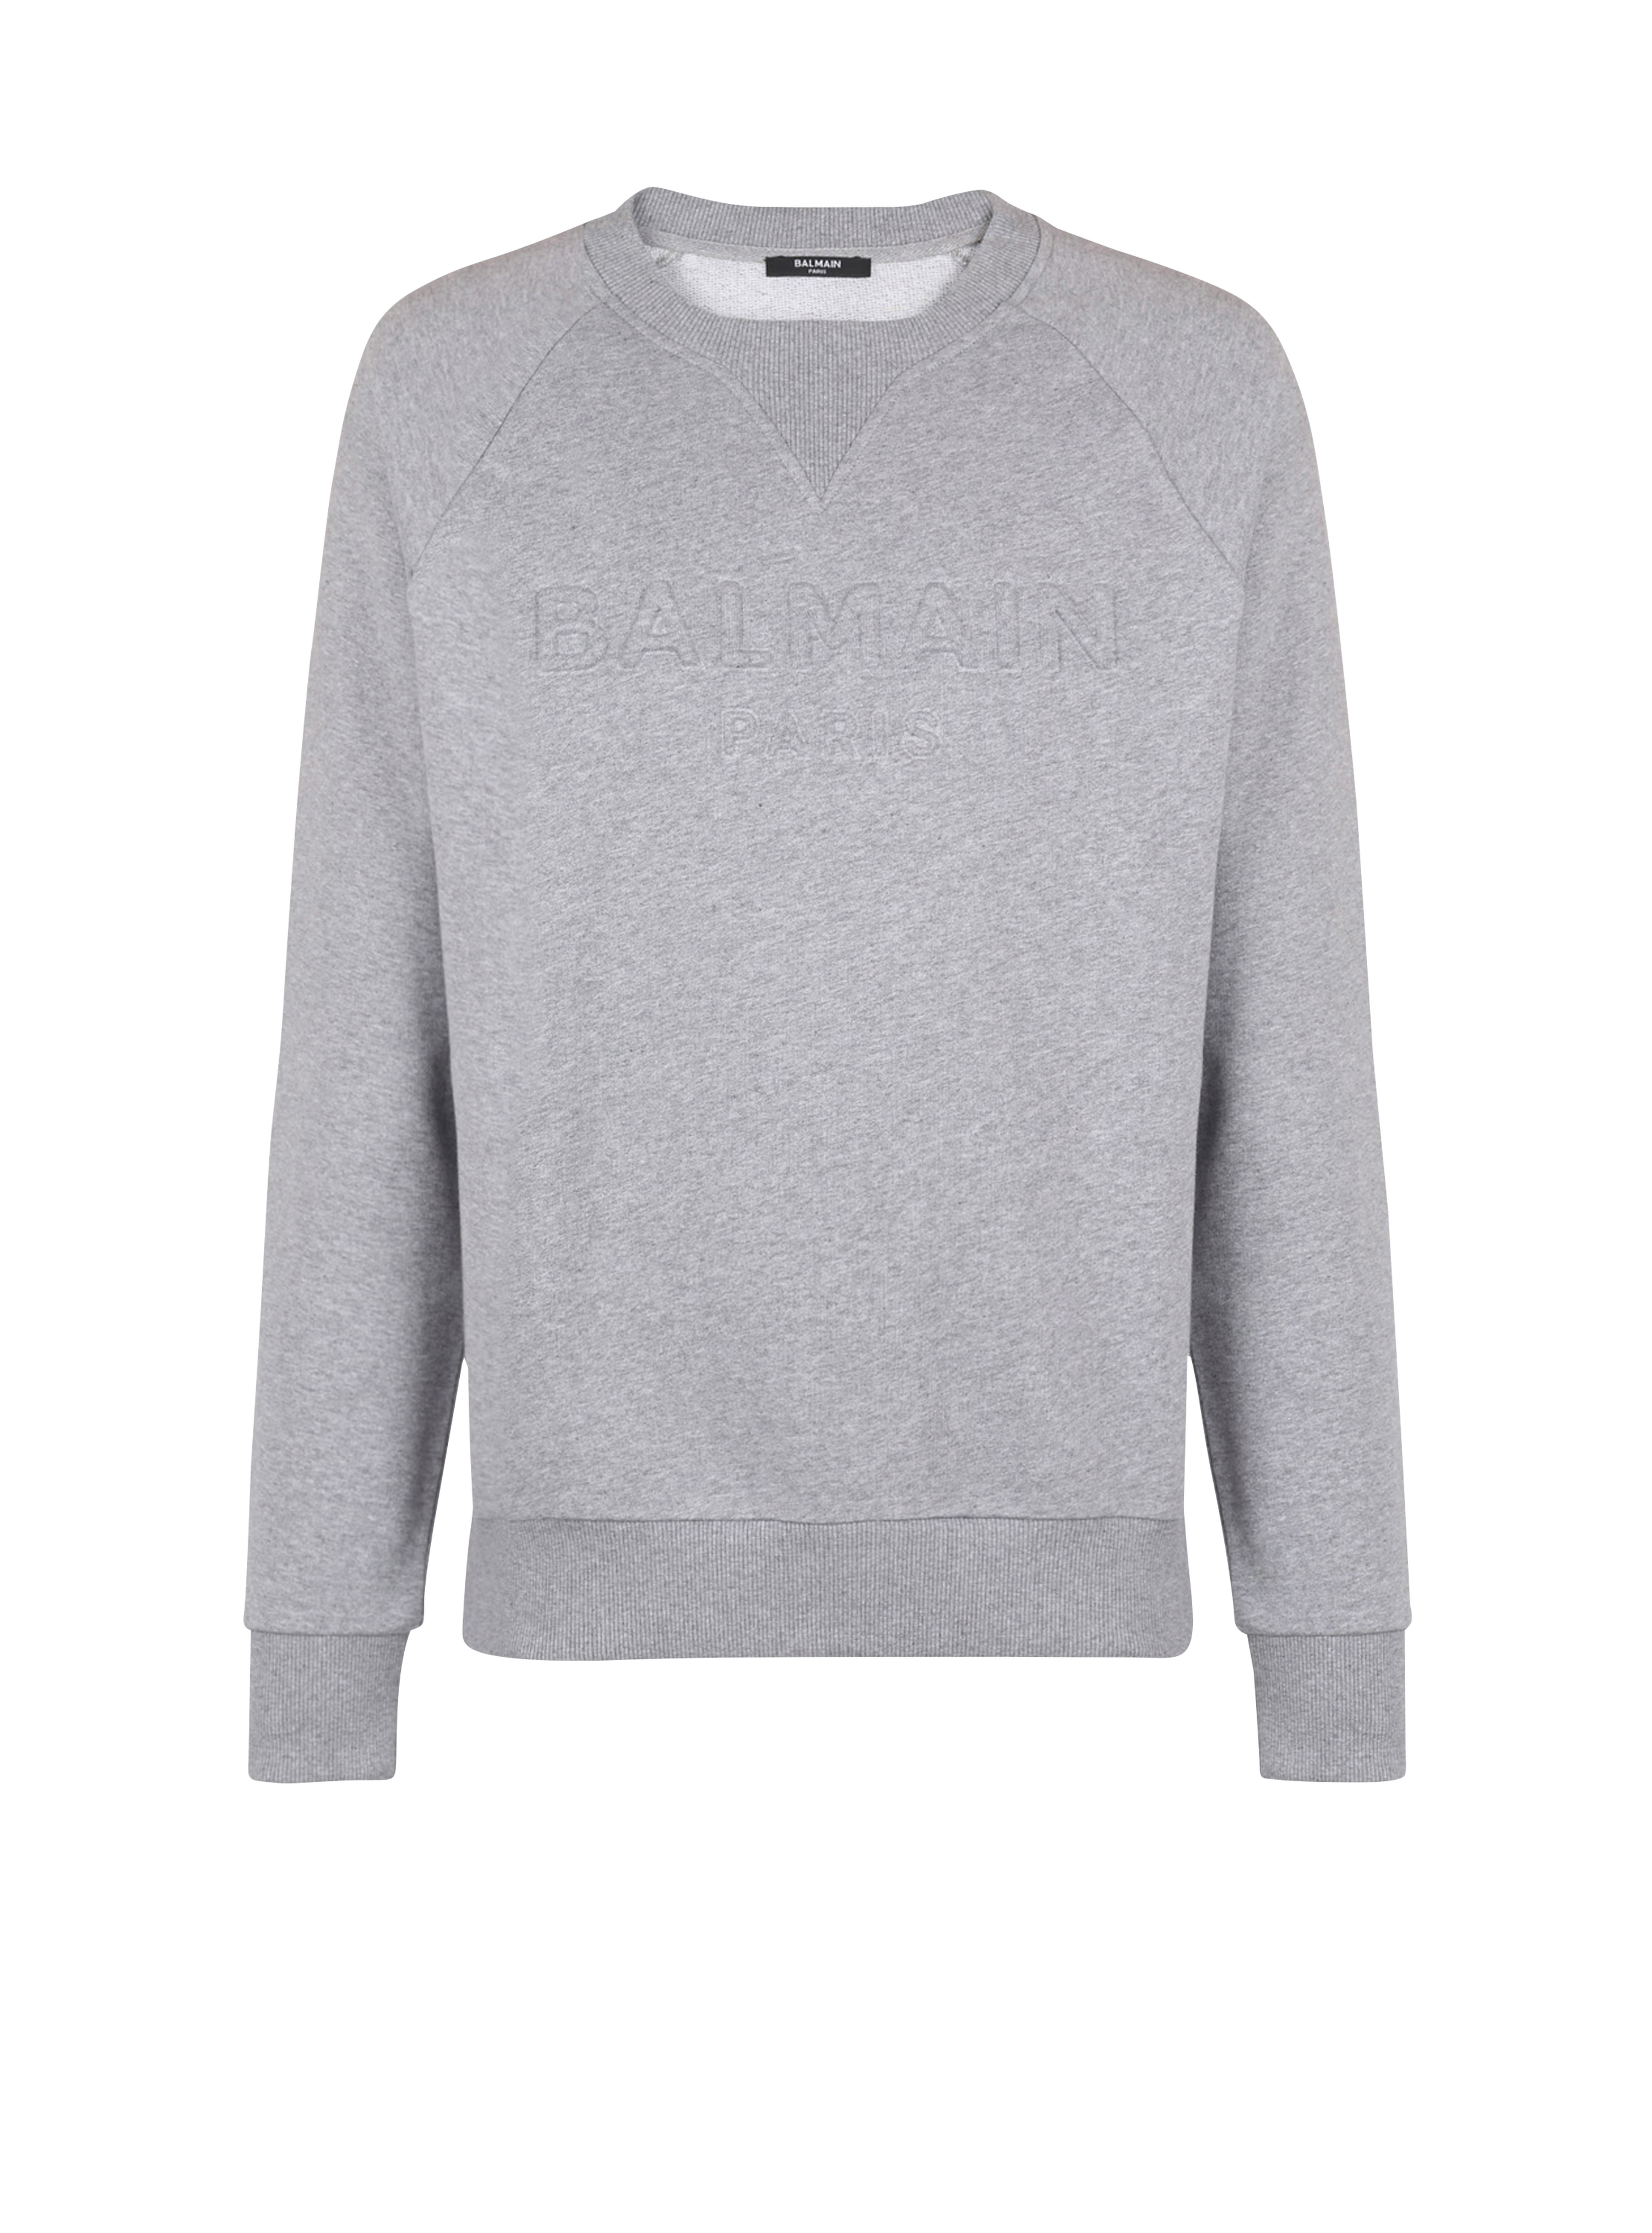 Cotton sweatshirt with embossed Balmain logo, grey